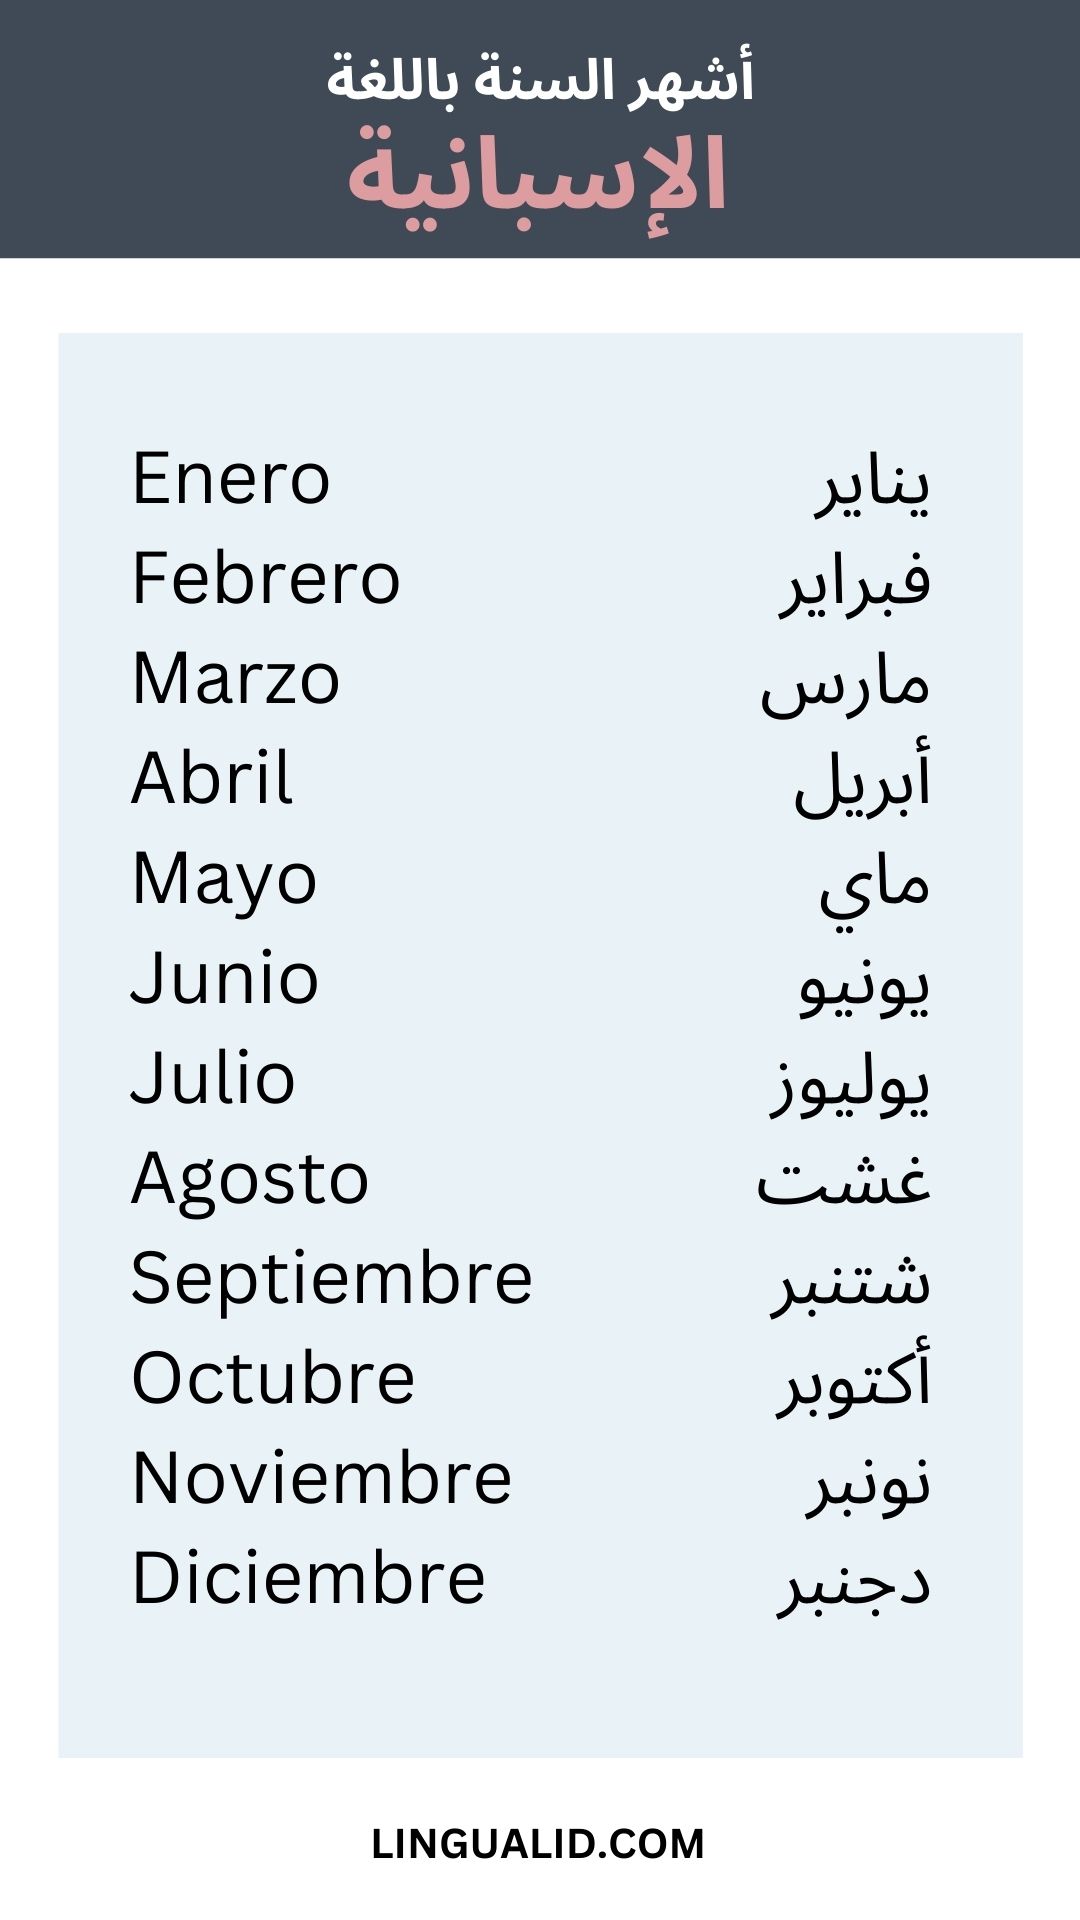 أشهر السنة باللغة الإسبانية - الأيام الأشهر الفصول الإسبانية 